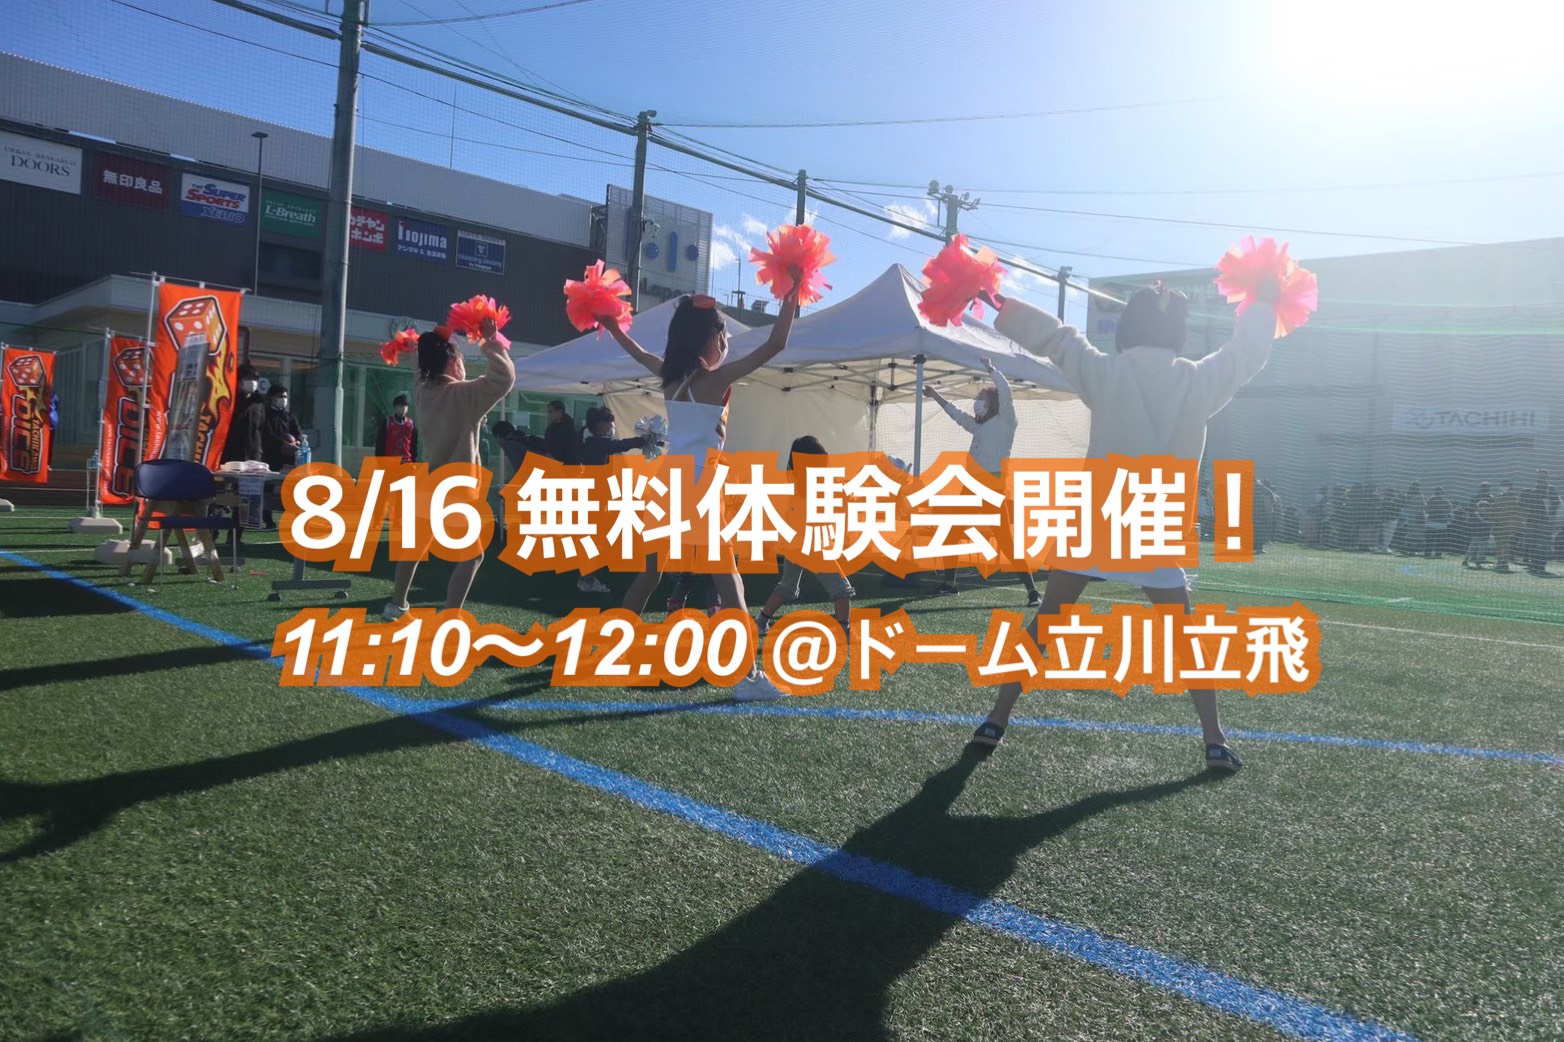 【2021年8月16日㈪】夏休みチアダンス体験会 in ドーム立川立飛